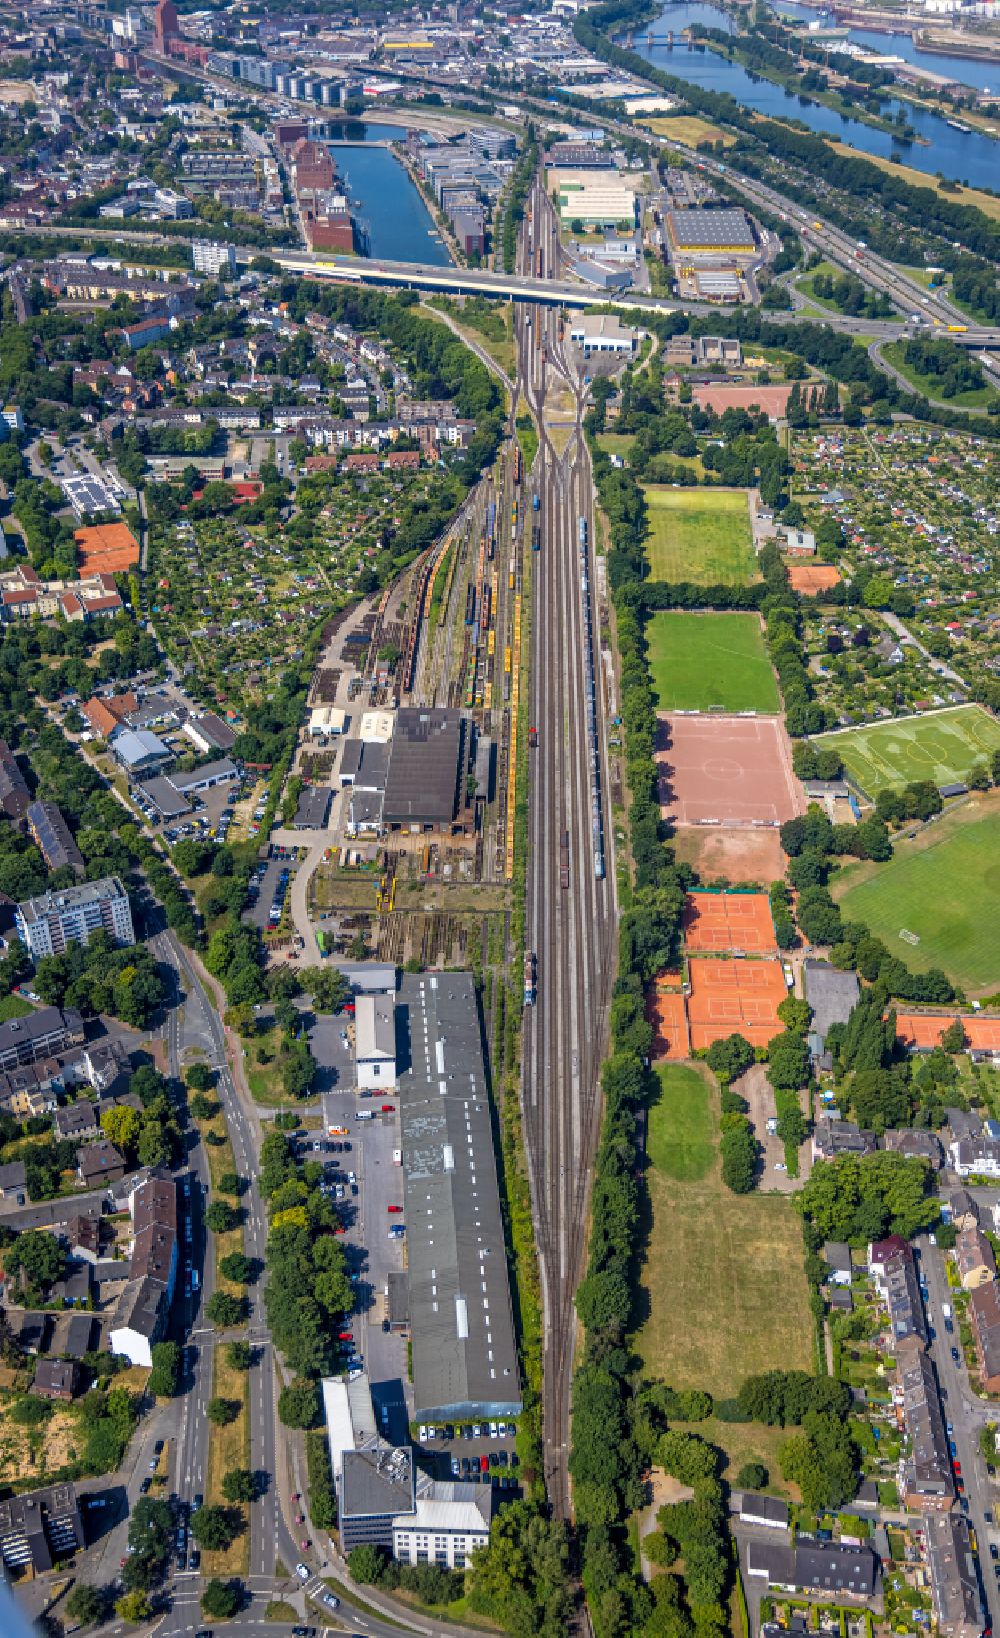 Luftbild Duisburg - Bahnbetriebswerk und Ausbesserungswerk von Zügen des Gütertransportes in Duisburg im Bundesland Nordrhein-Westfalen, Deutschland